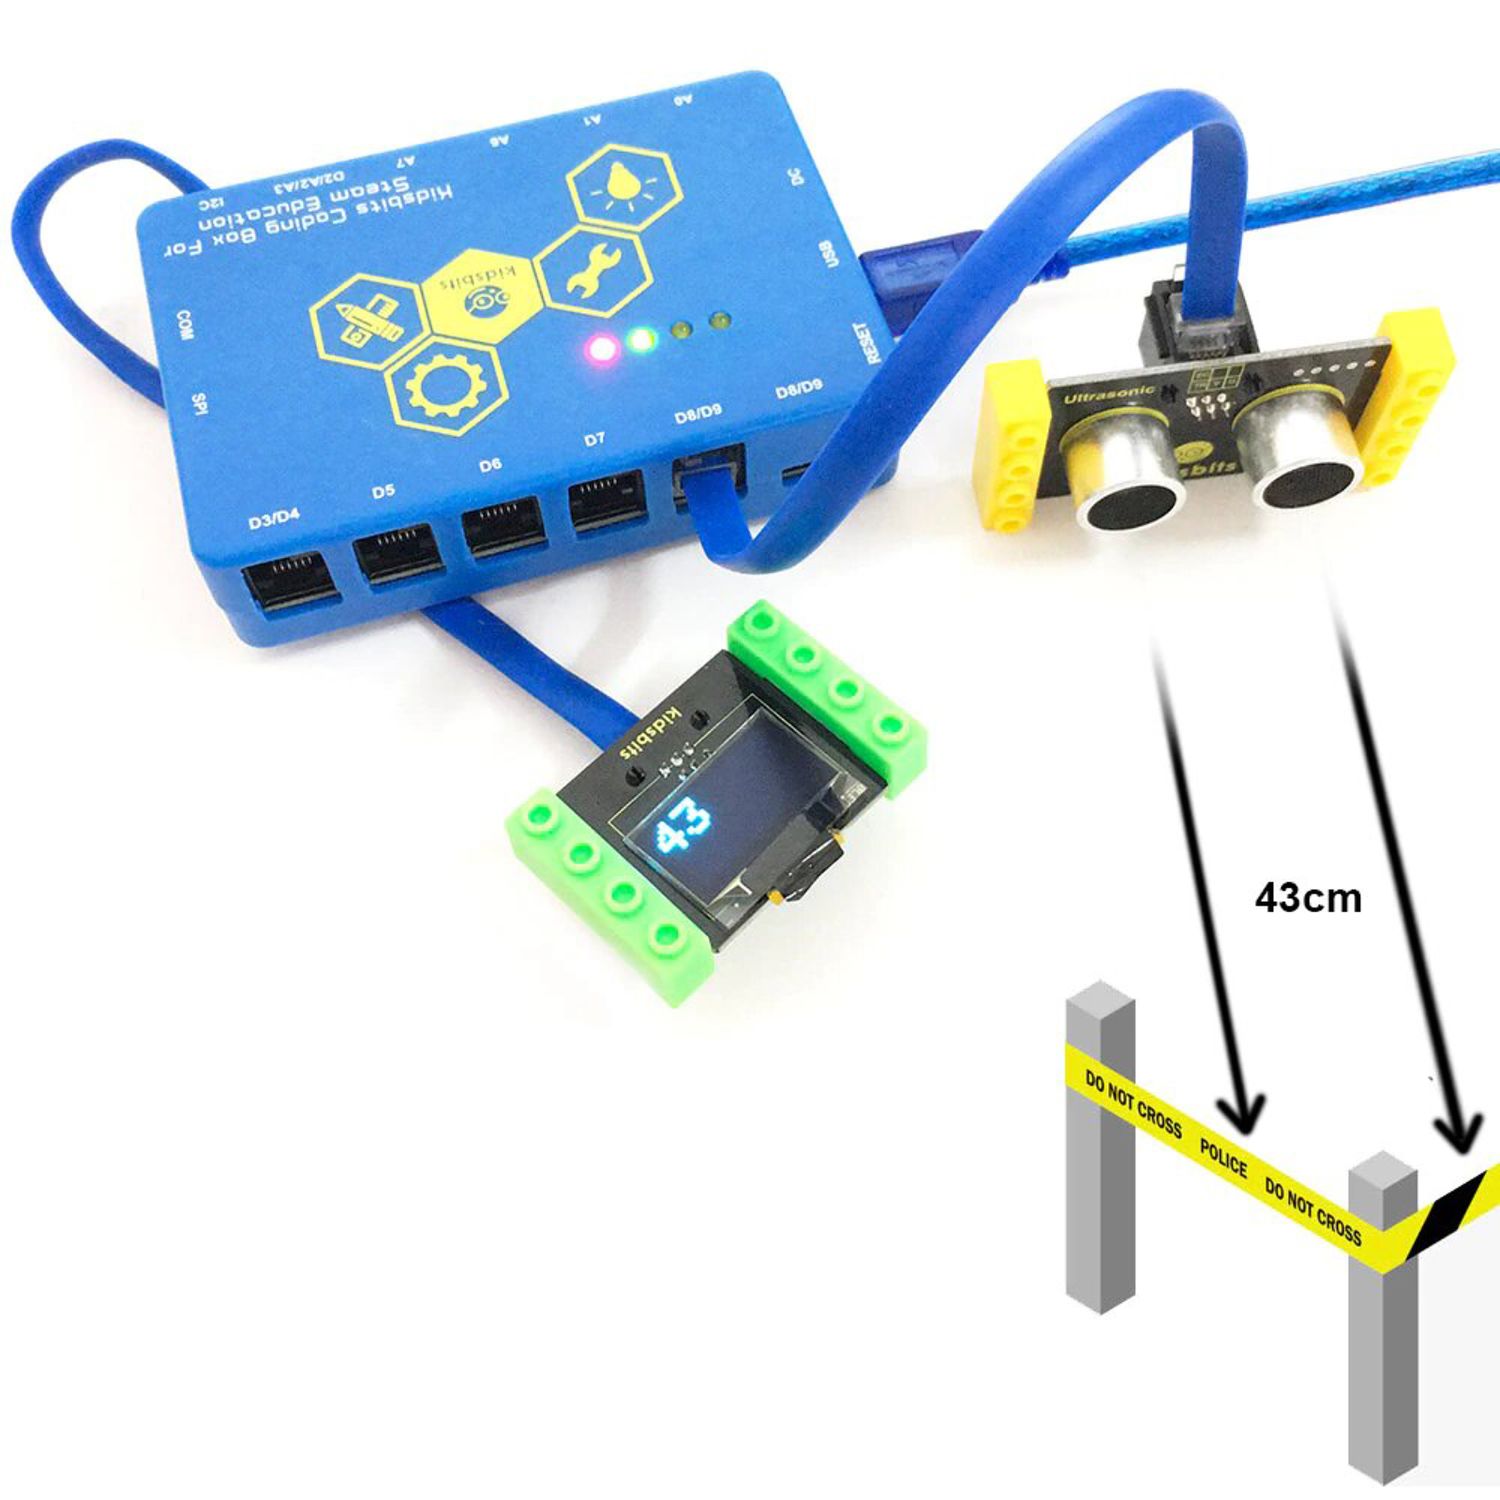 Модуль ультразвукового датчика расстояния HC-SR04 Kidsbits Lego